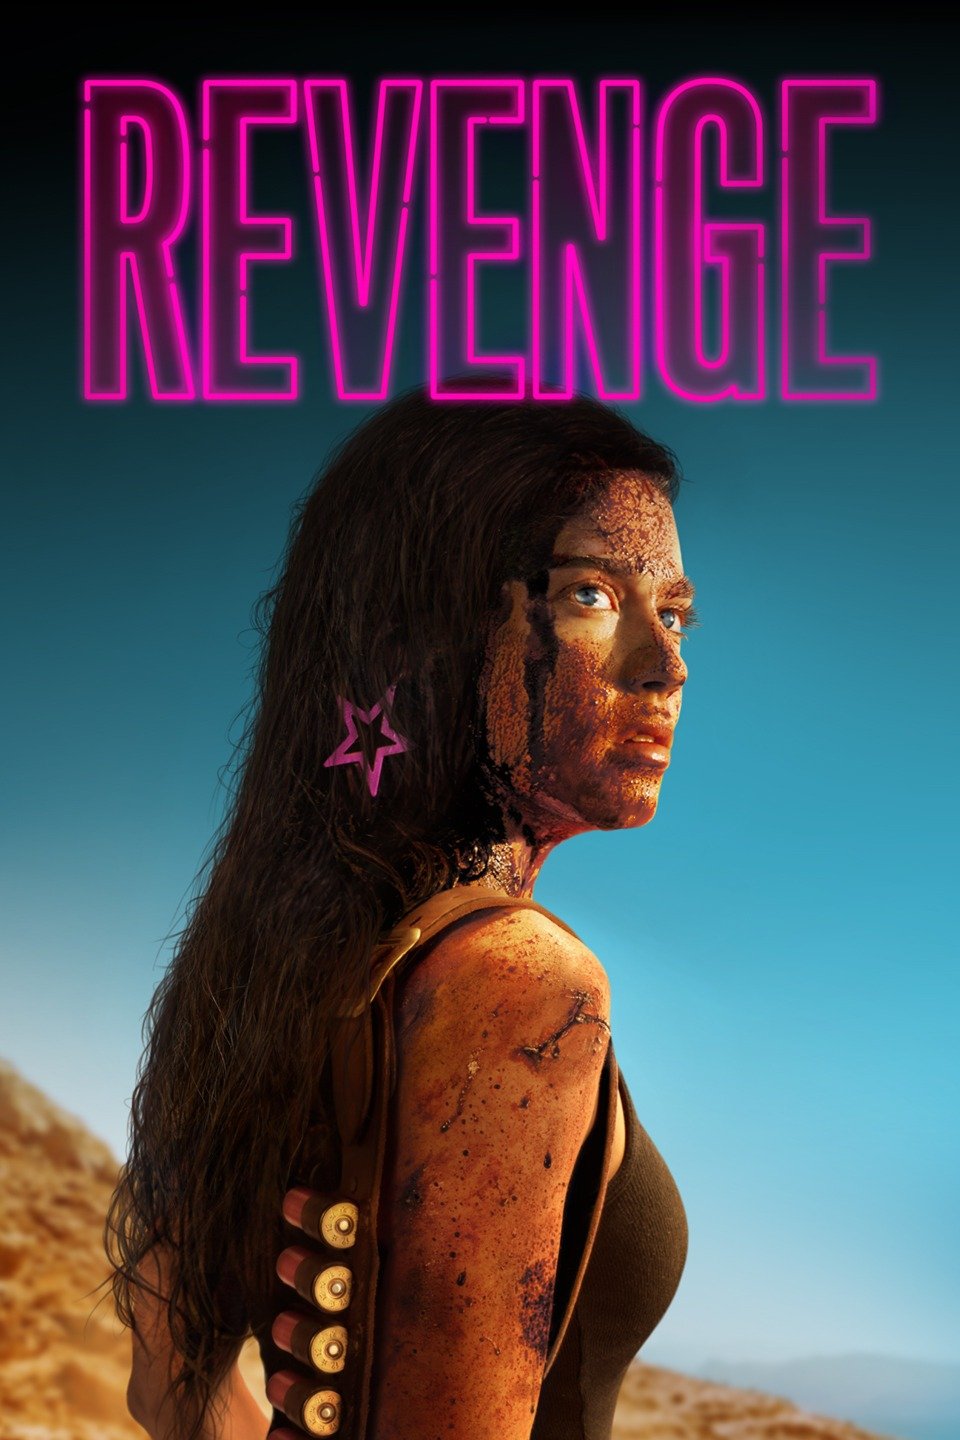 [ฝรั่ง] Revenge (2017) ดับแค้น [1080p] [พากย์อังกฤษ 5.1 + ฝรั่งเศส 5.1] [Soundtrack บรรยายไทย] [เสียงอังกฤษ + ซับไทย] [ONE2UP]